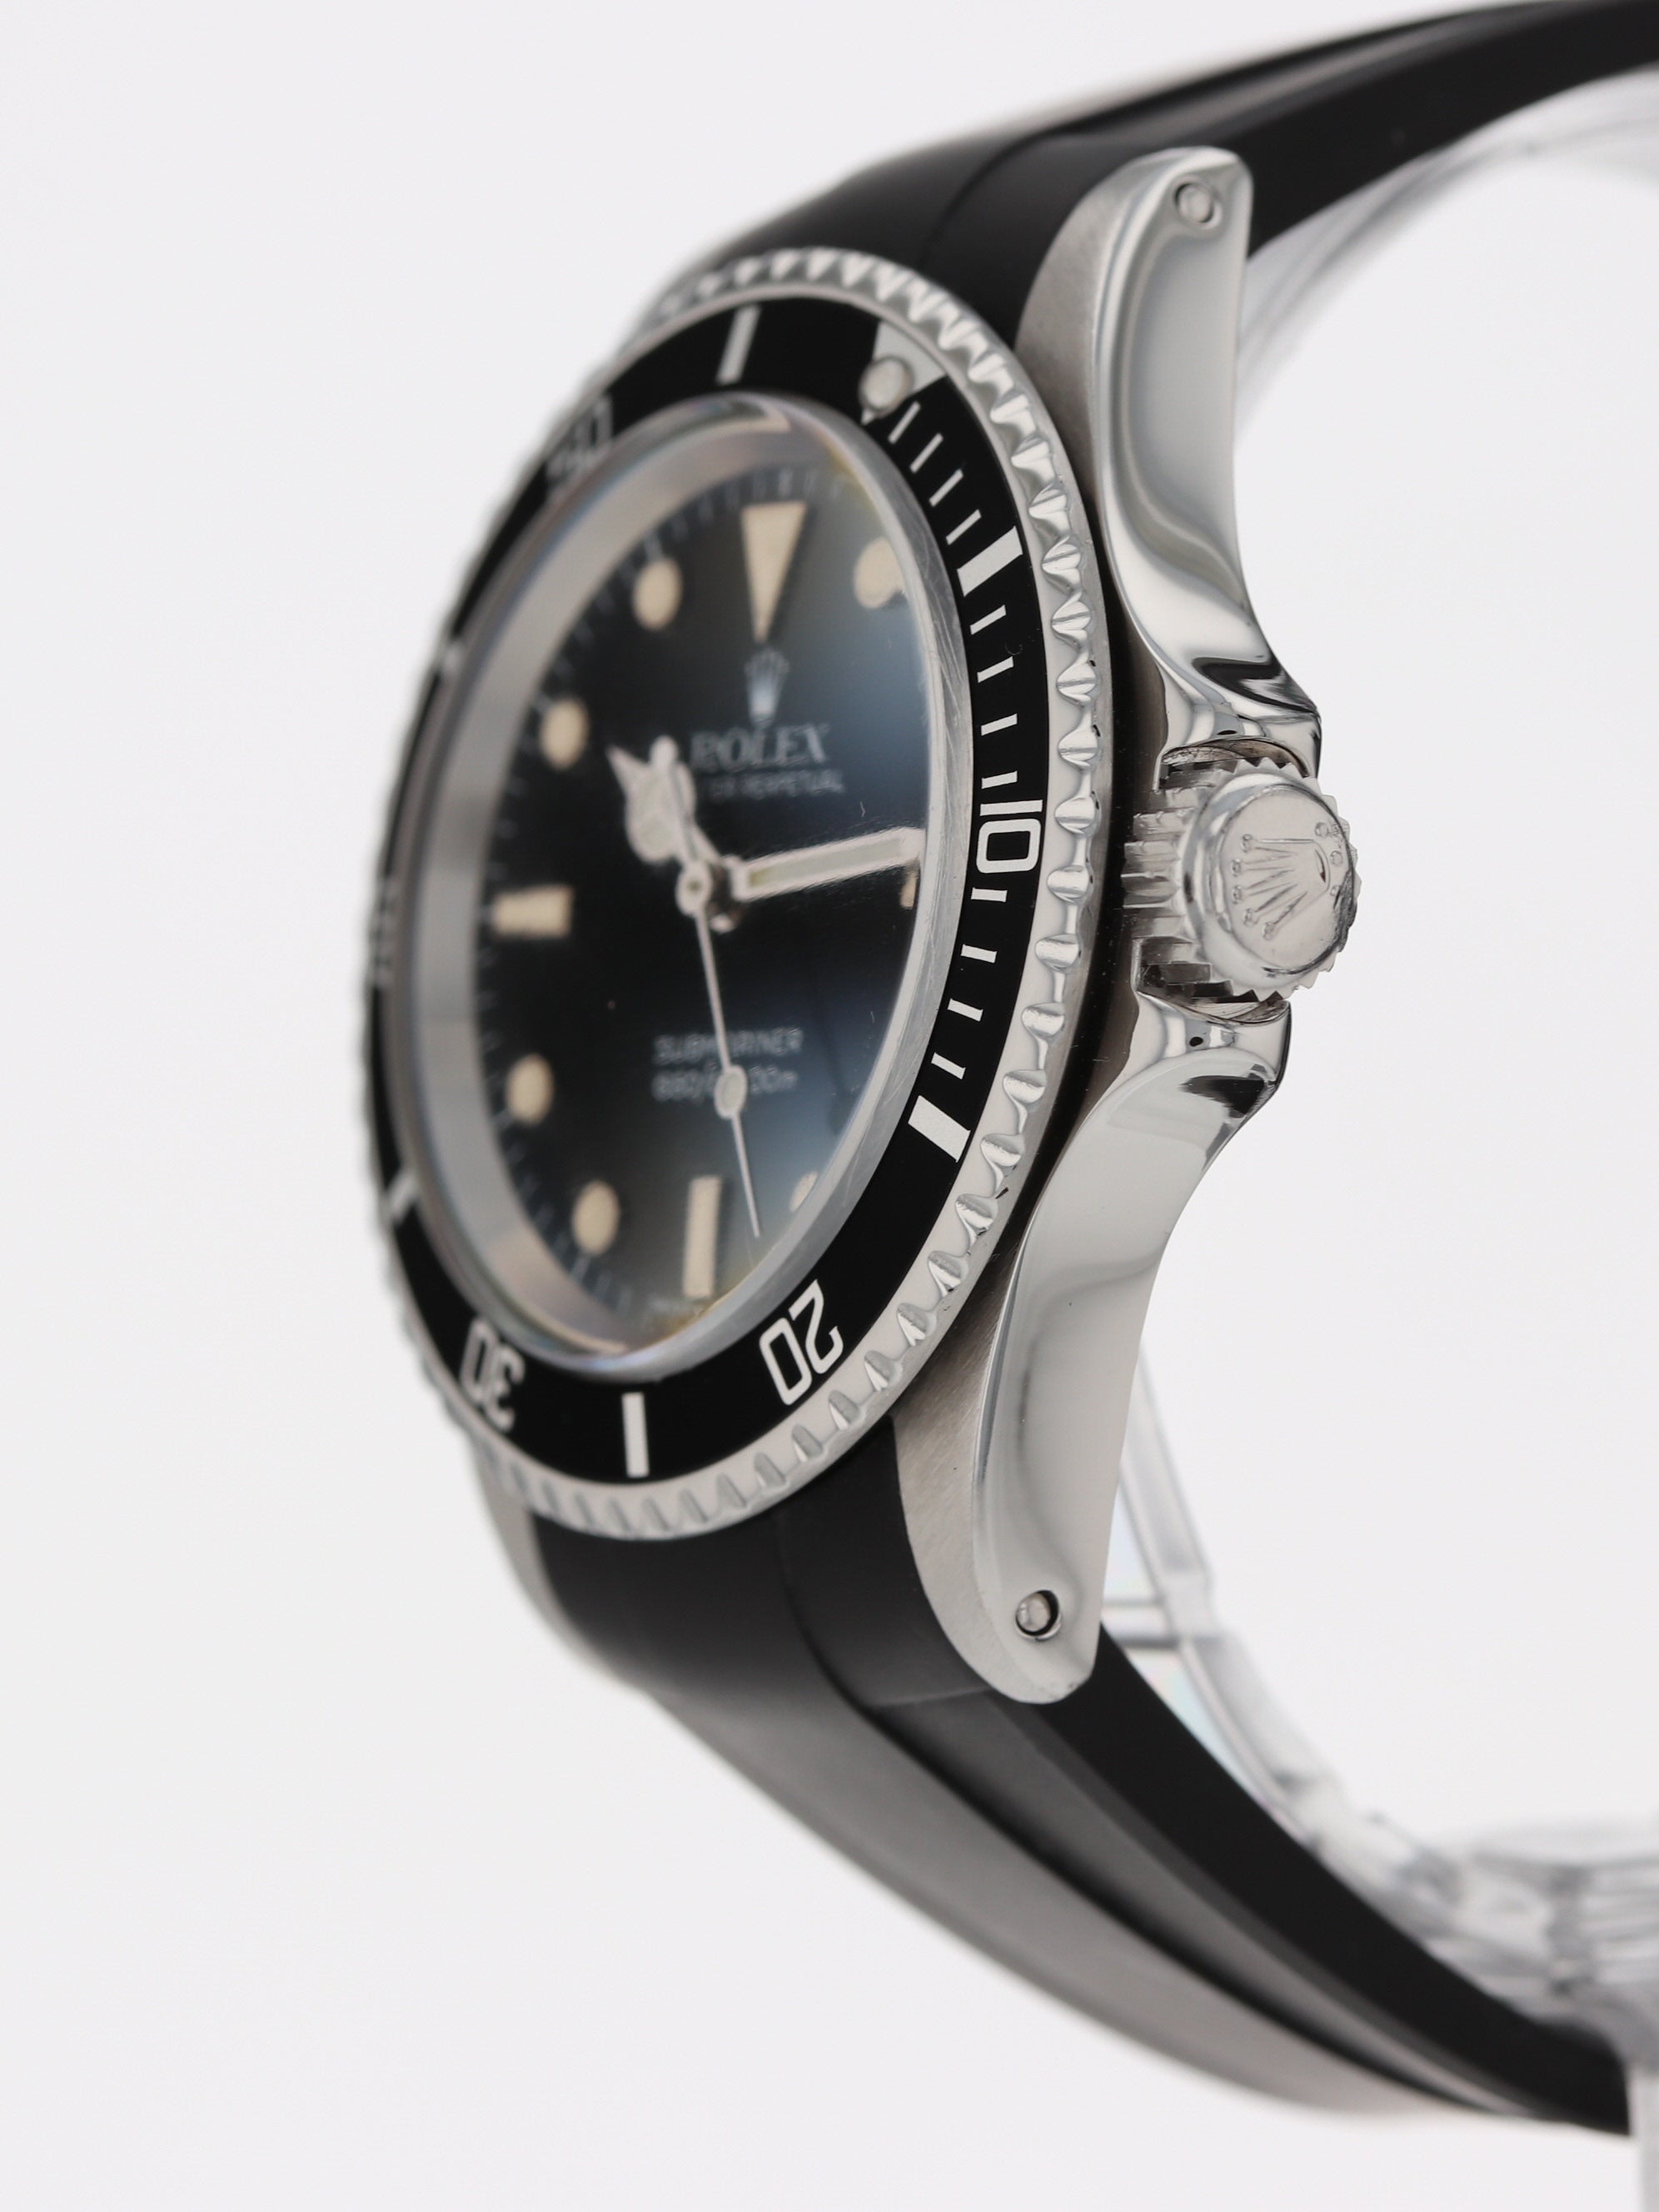 Rolex Submariner 5513 Plexi Glass Vintage 1966 - UK Specialist Watches